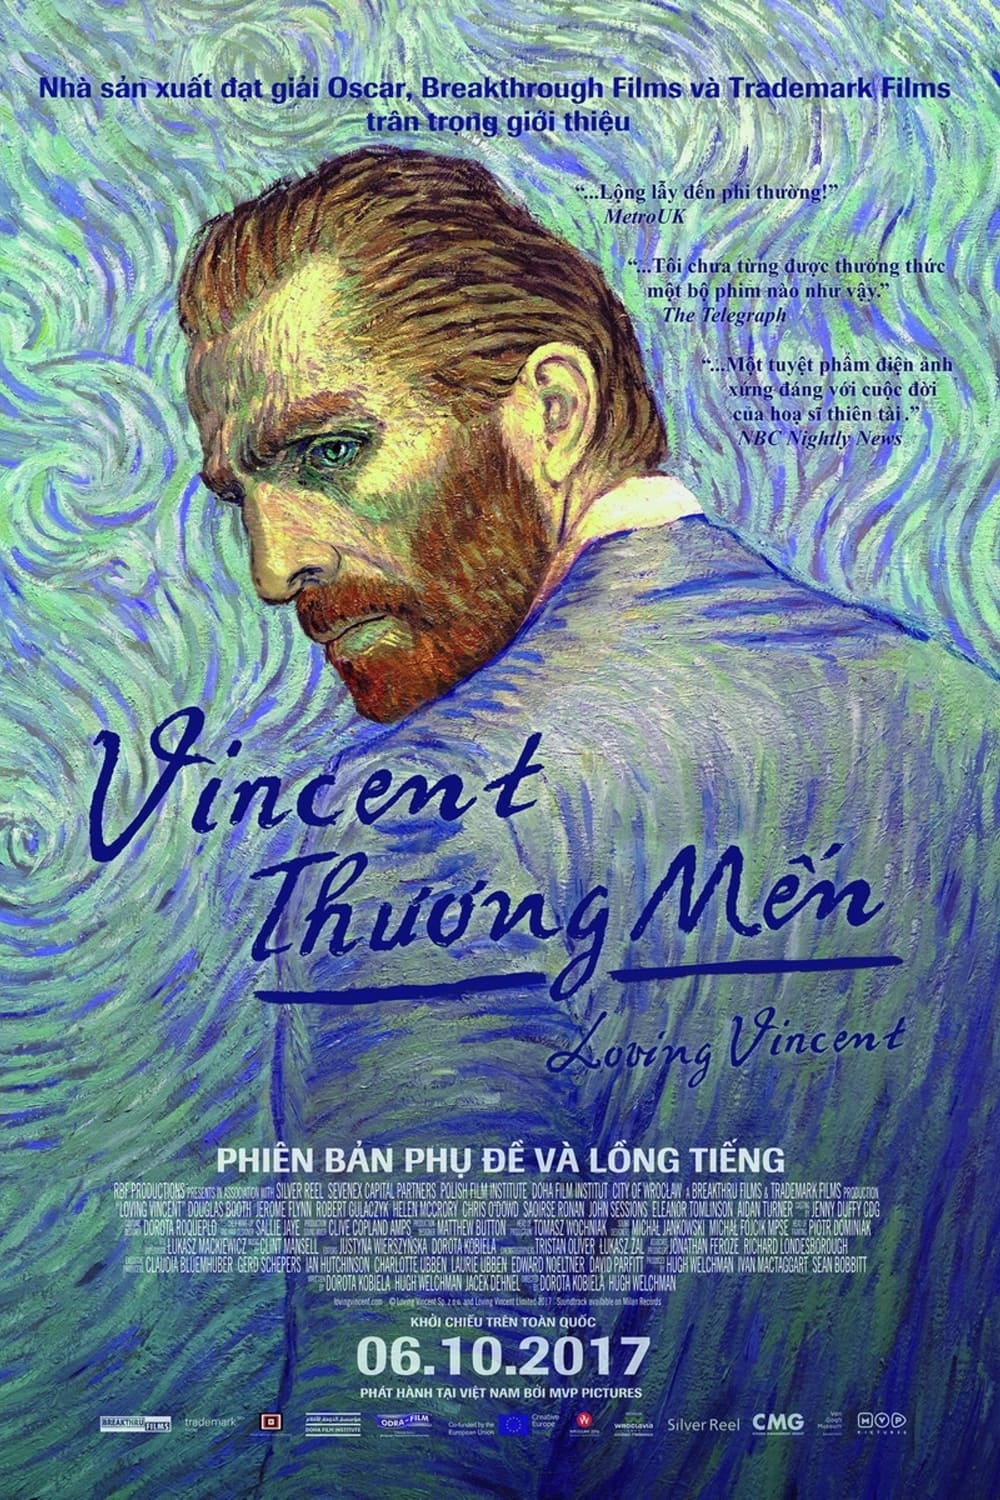 Vincent Thương Mến (Loving Vincent) [2017]